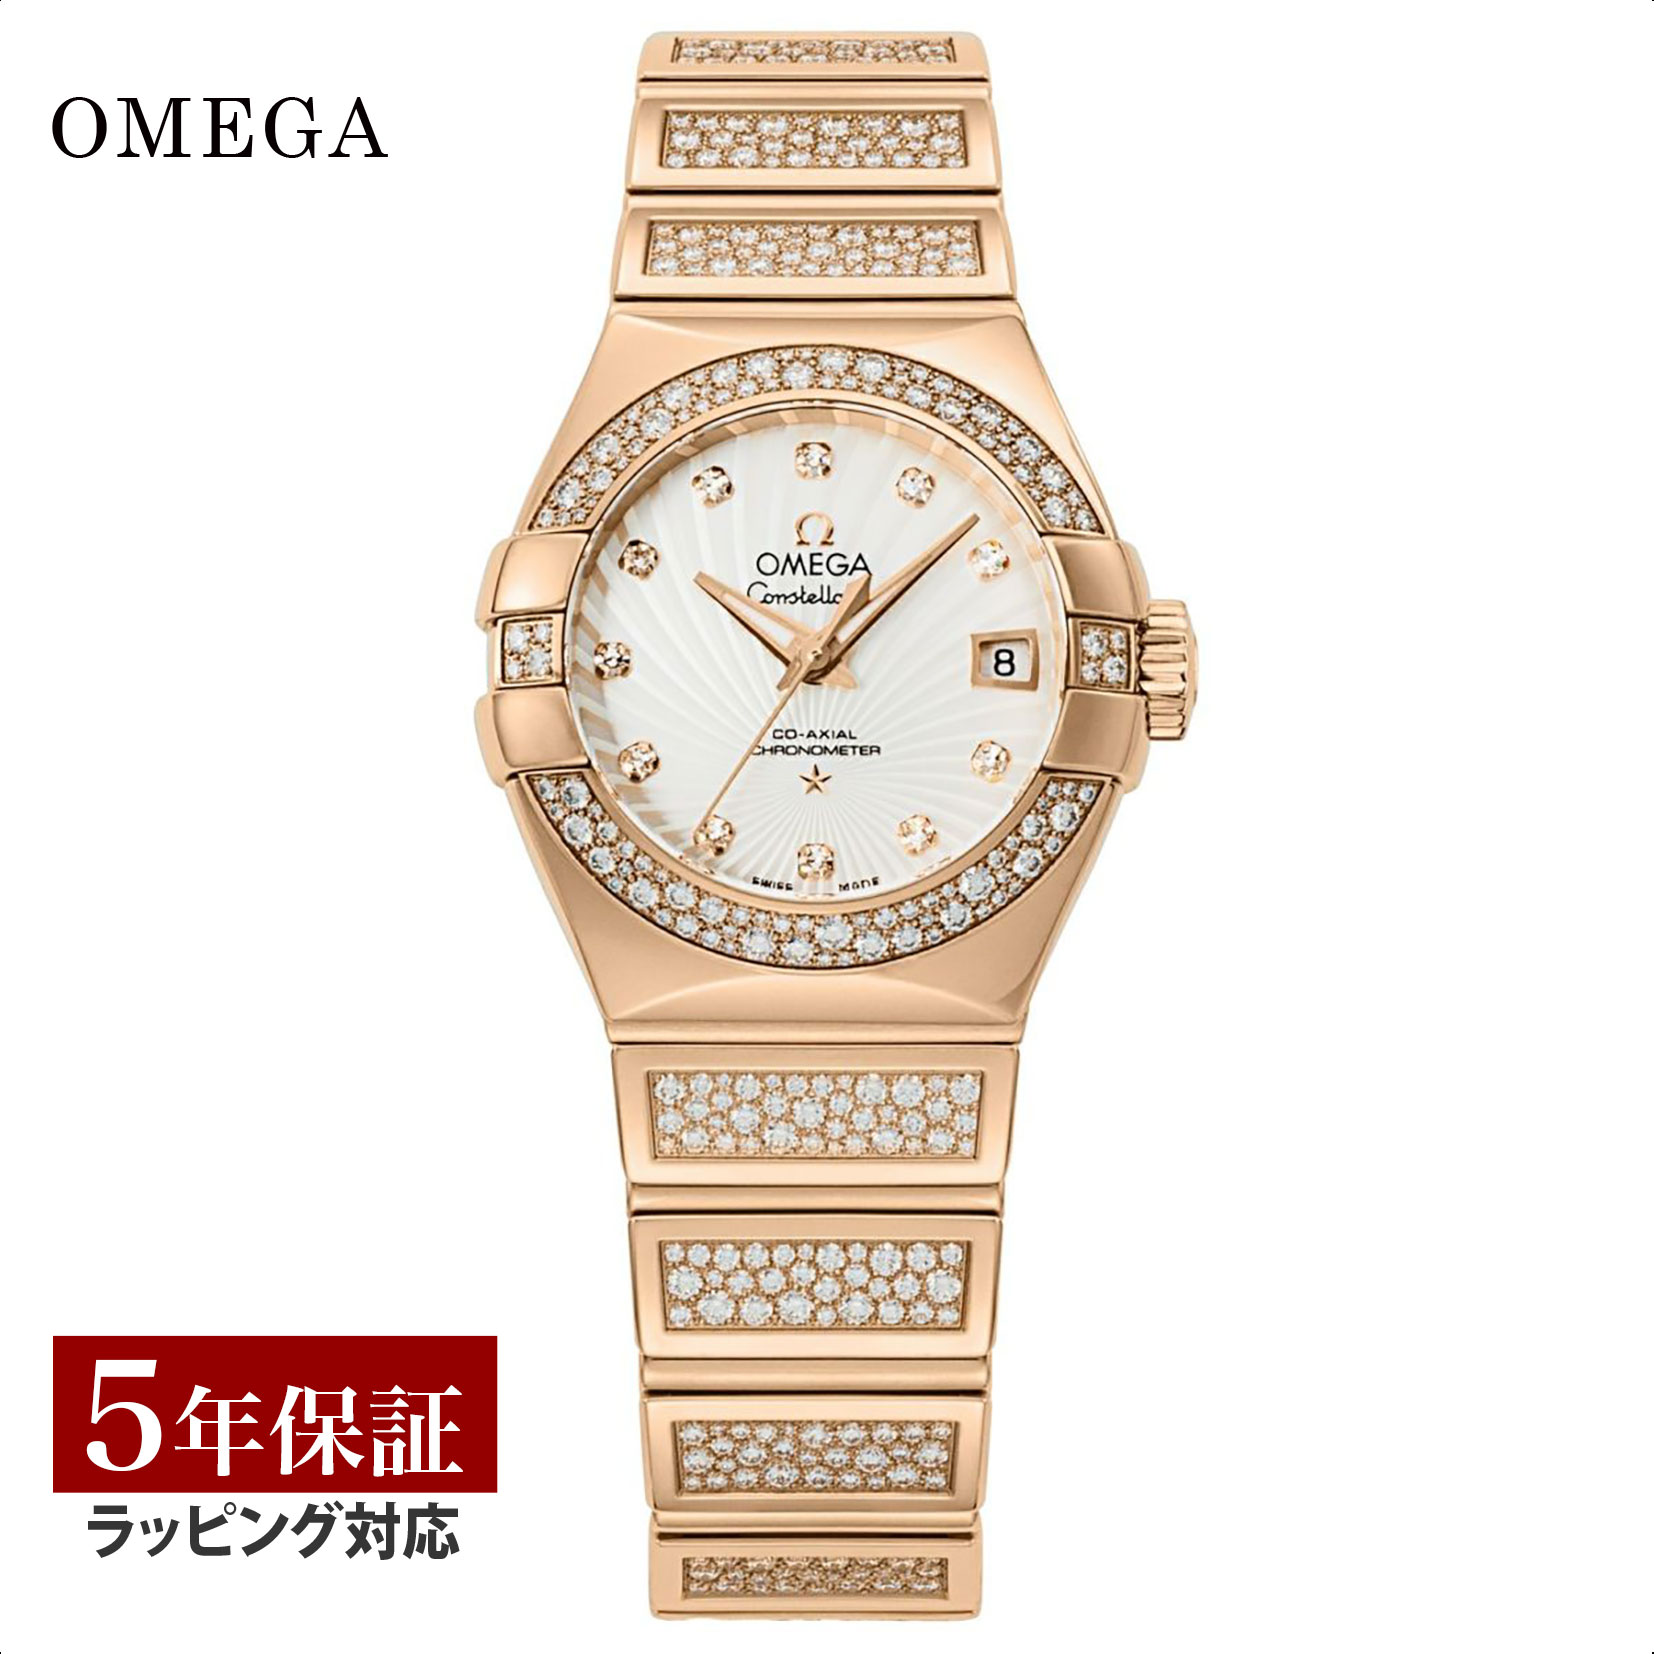 【当店限定】 オメガ OMEGA レディース 時計 CONSTELLATION コンステレーション 自動巻 ホワイトパール 123.55.27.20.55.004 時計 腕時計 高級腕時計 ブランド